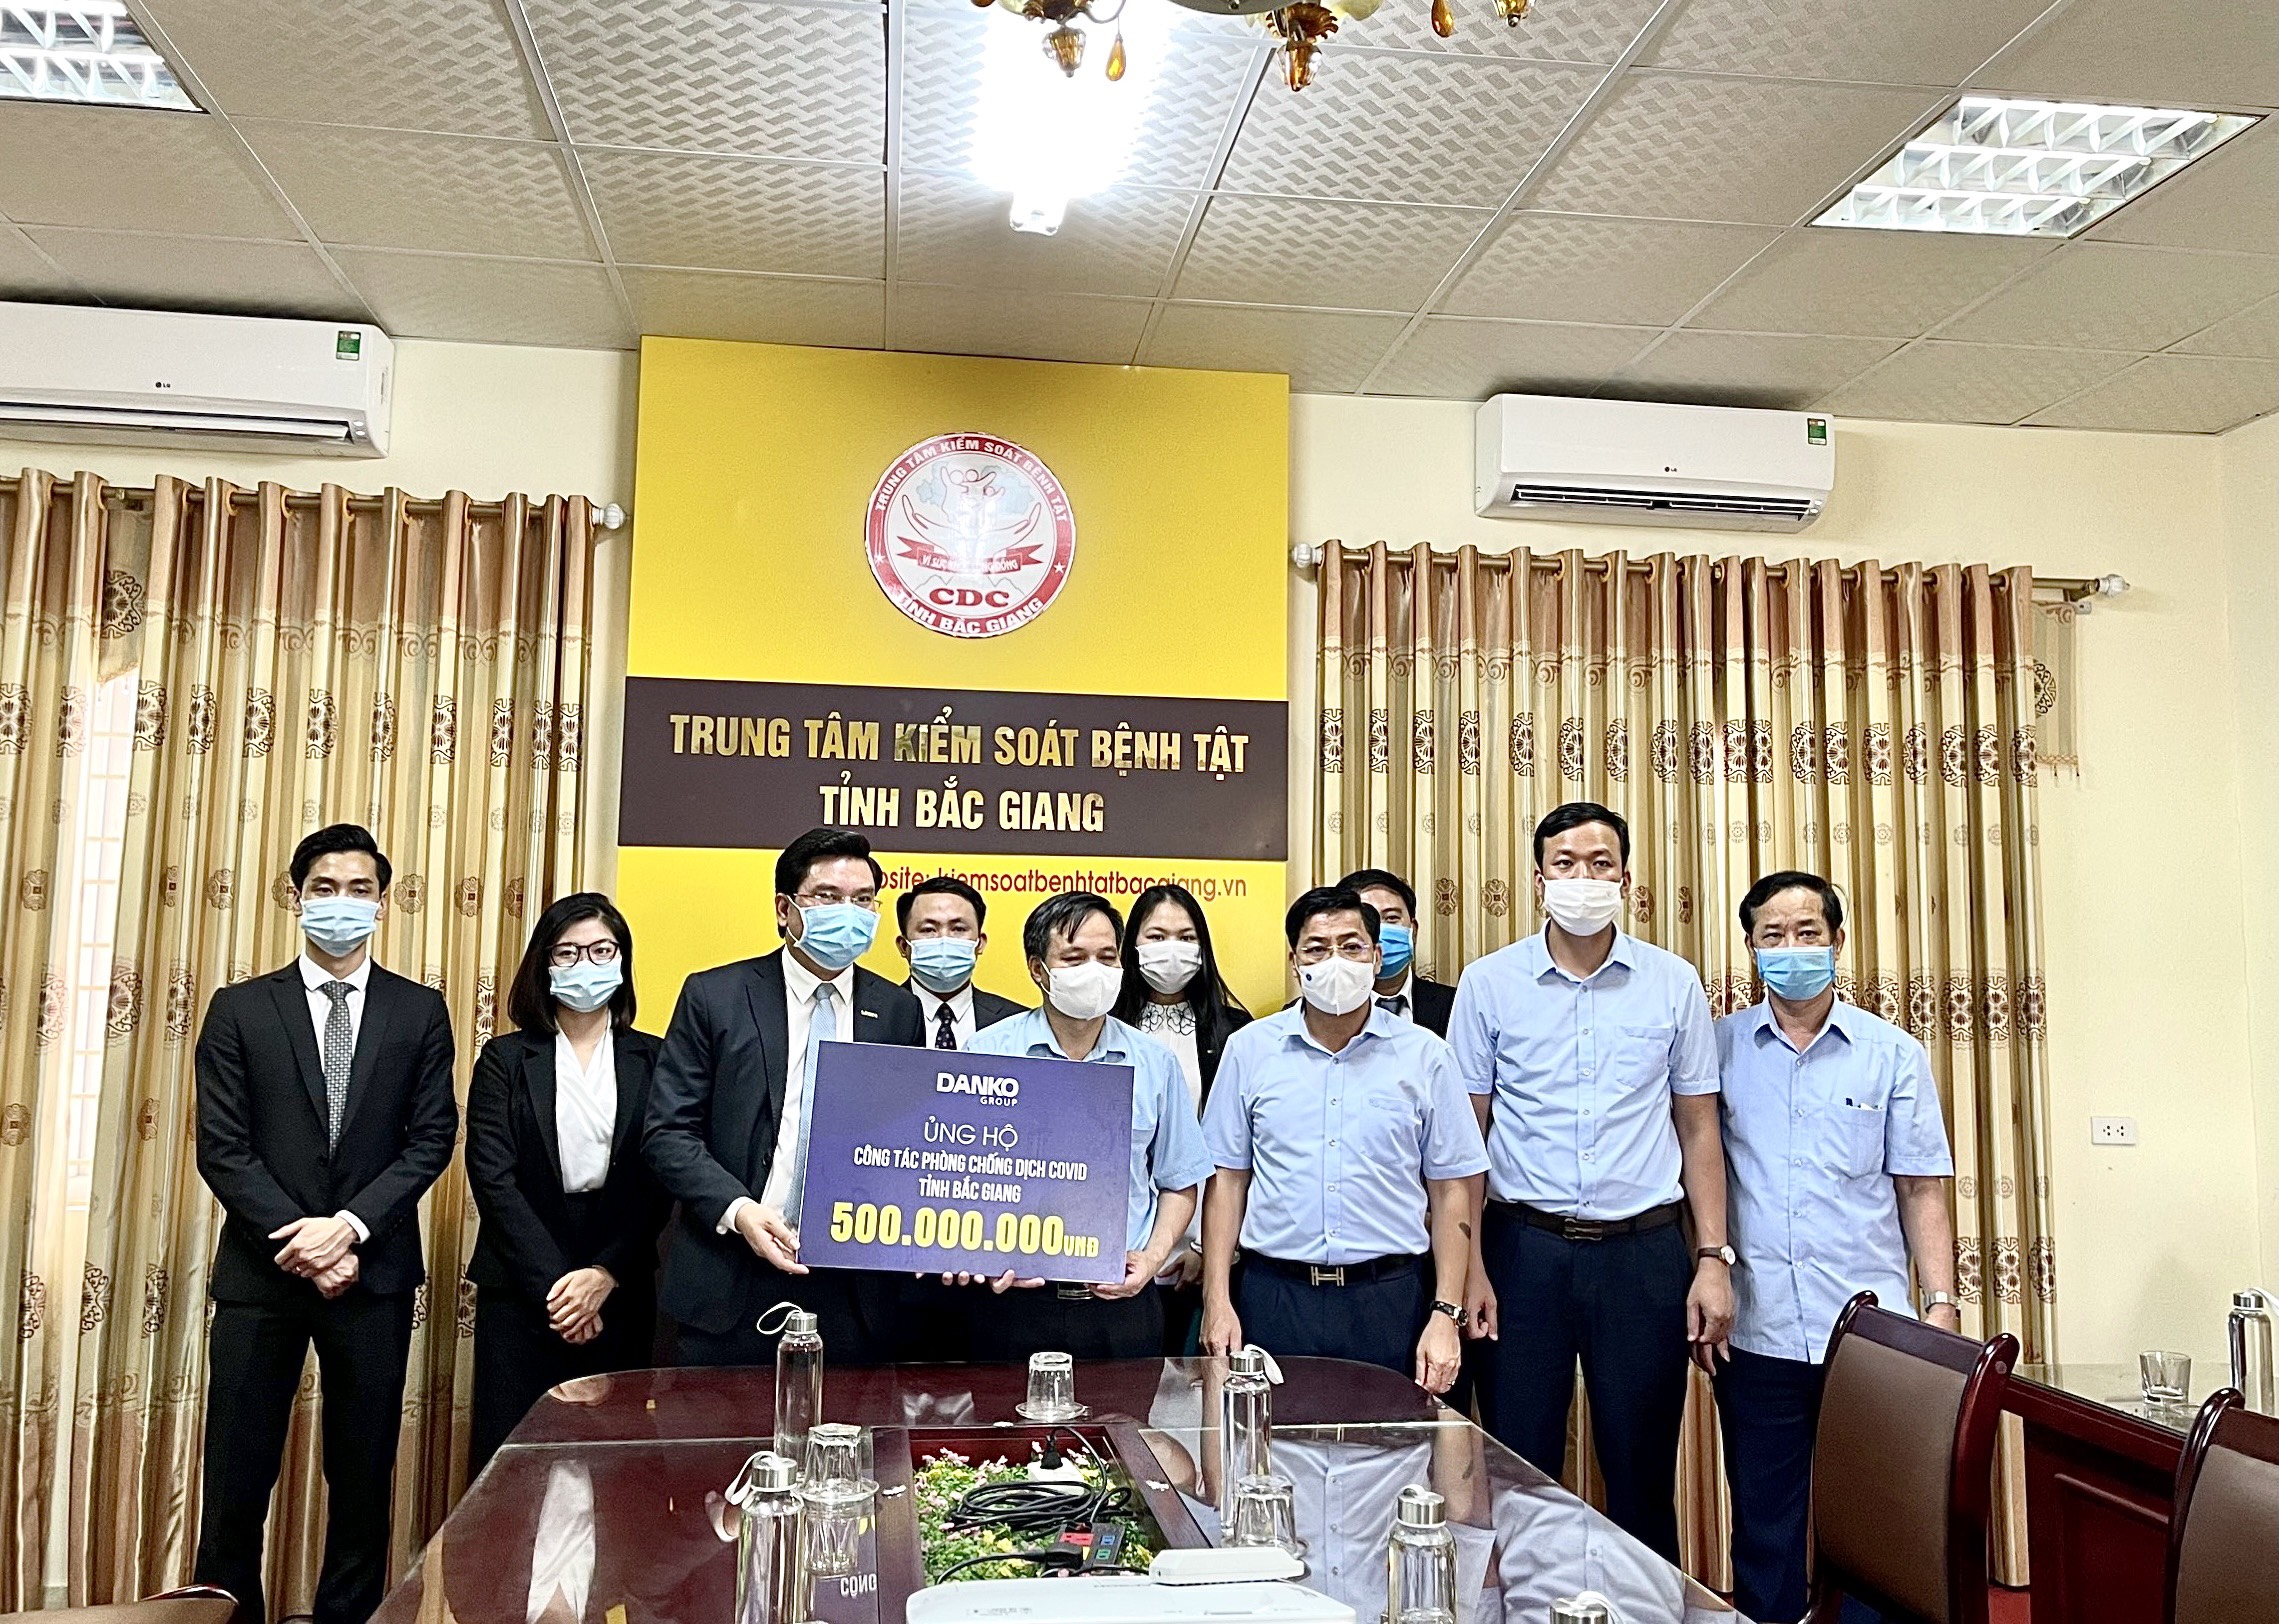 Danko Group ủng hộ 500 triệu chung tay cùng Bắc Giang chống dịch Covid-19